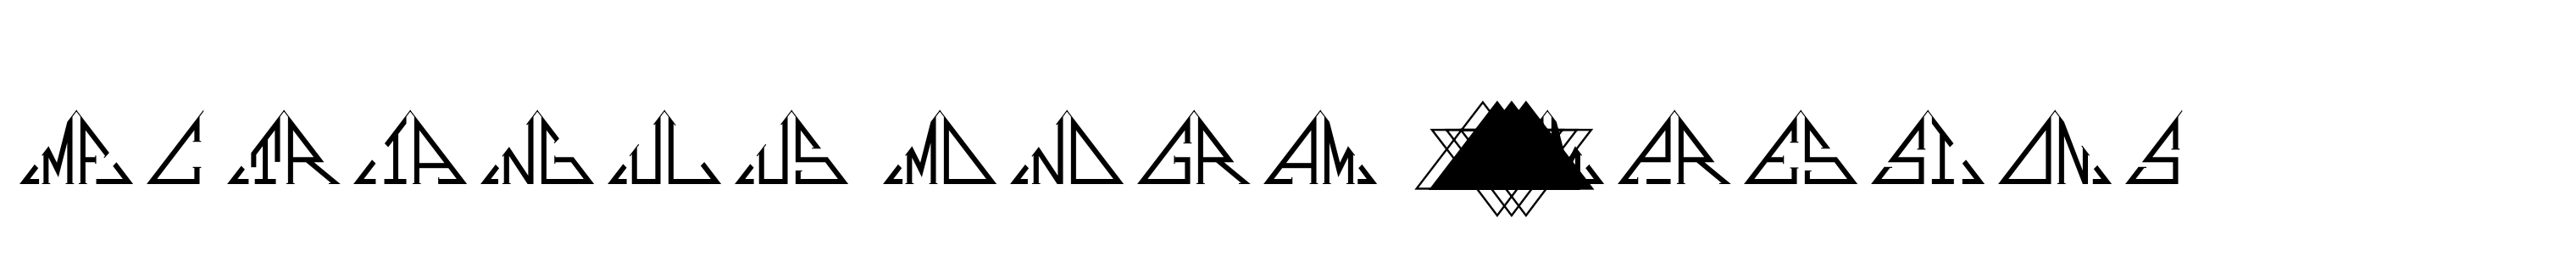 MFC Triangulus Monogram 1000 Impressions